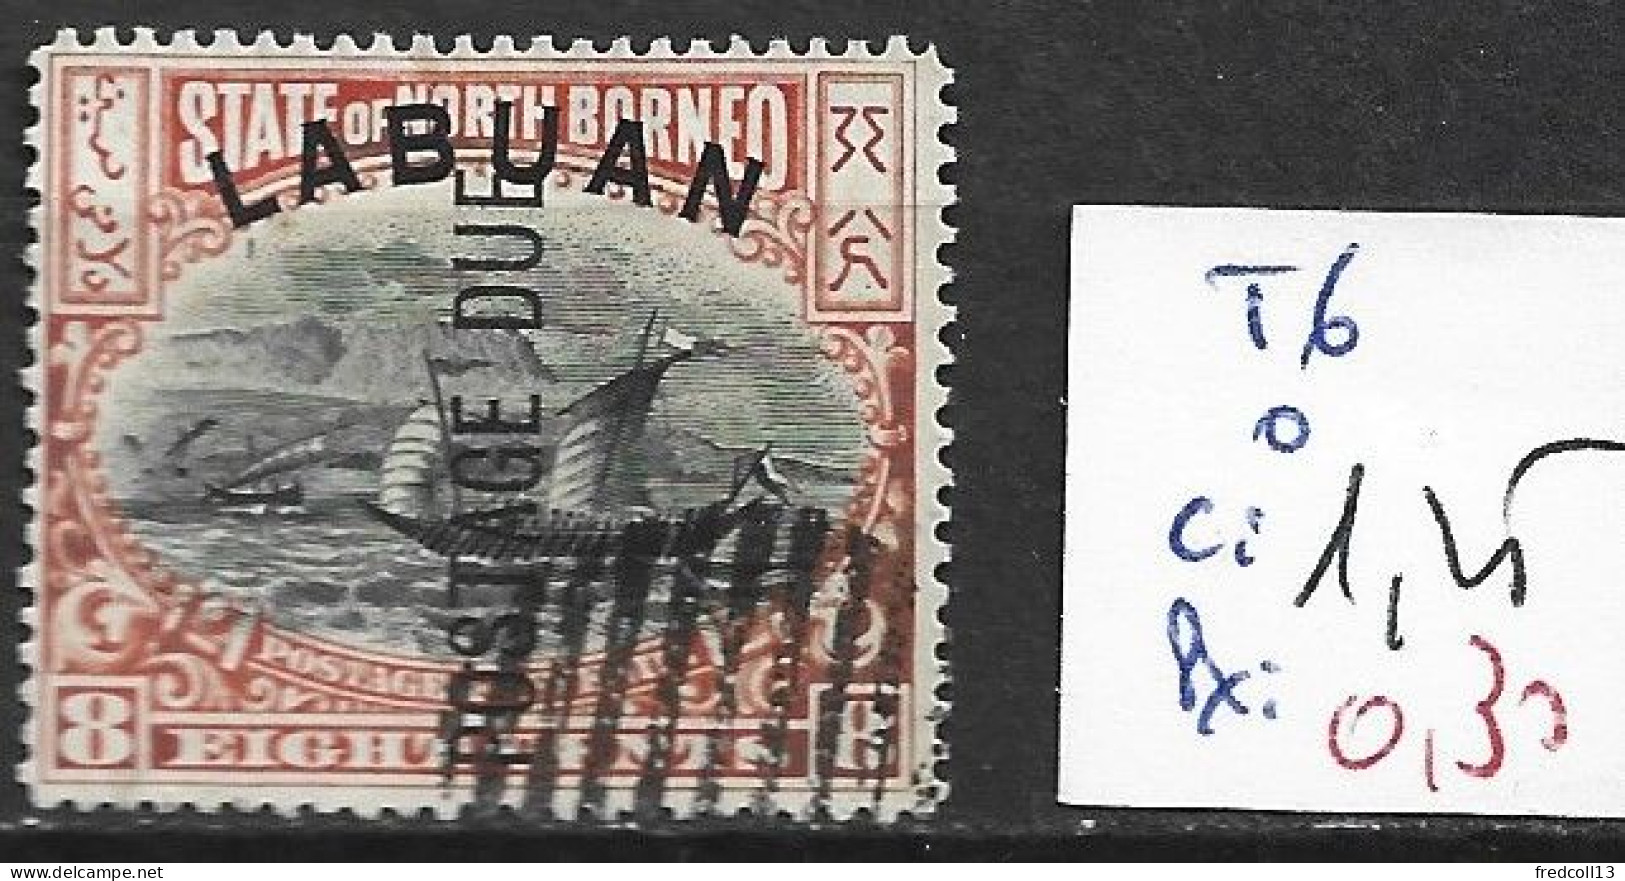 LABUAN TAXE 6 Oblitéré Côte 1.25 € ( Oblitération Annulée ) - North Borneo (...-1963)